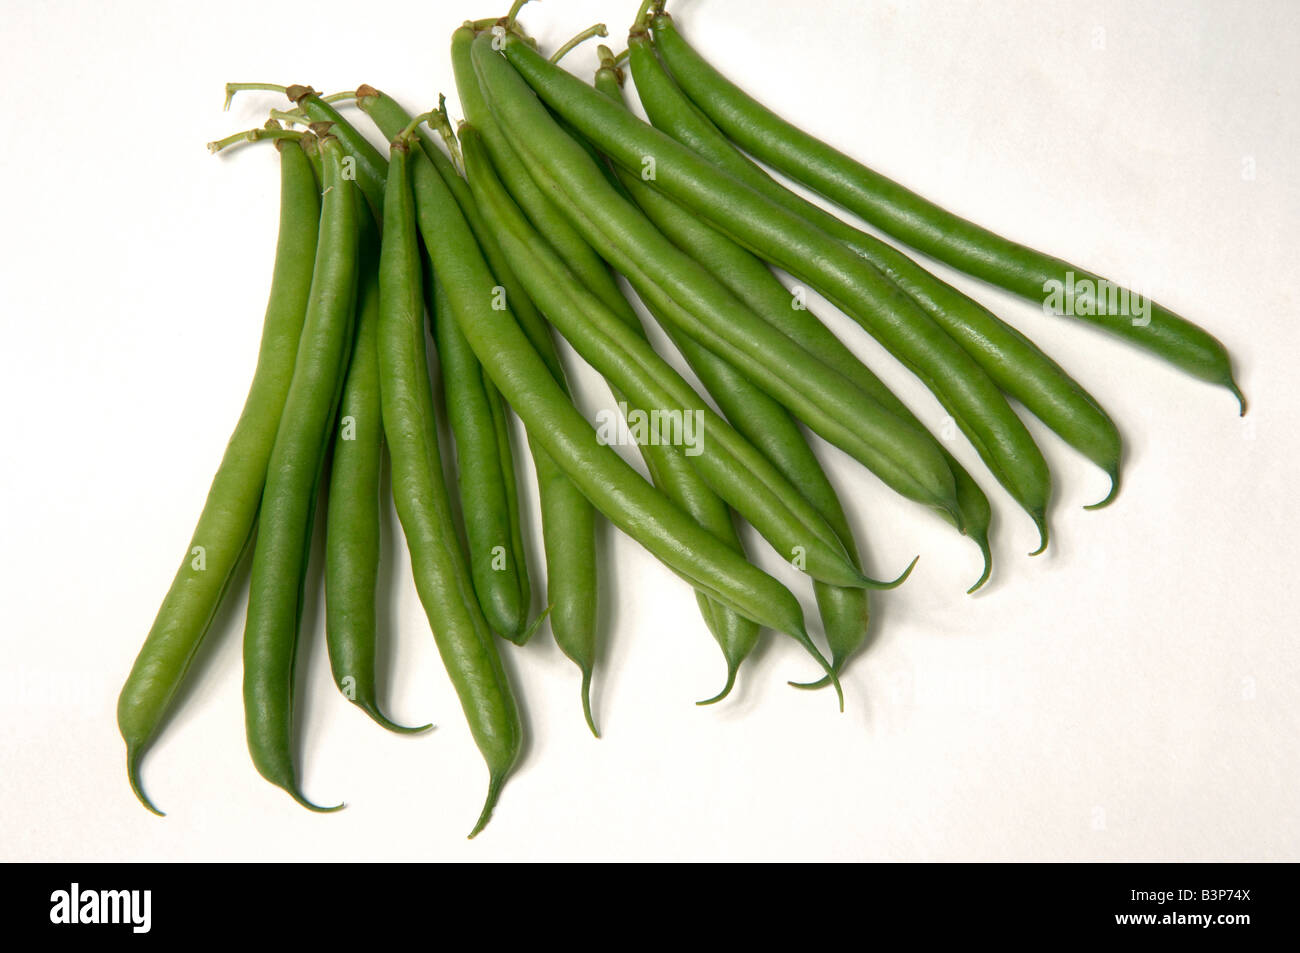 Inglese coltivati ortaggi tipico supermercato comprato string francese o fagiolini verdi Foto Stock